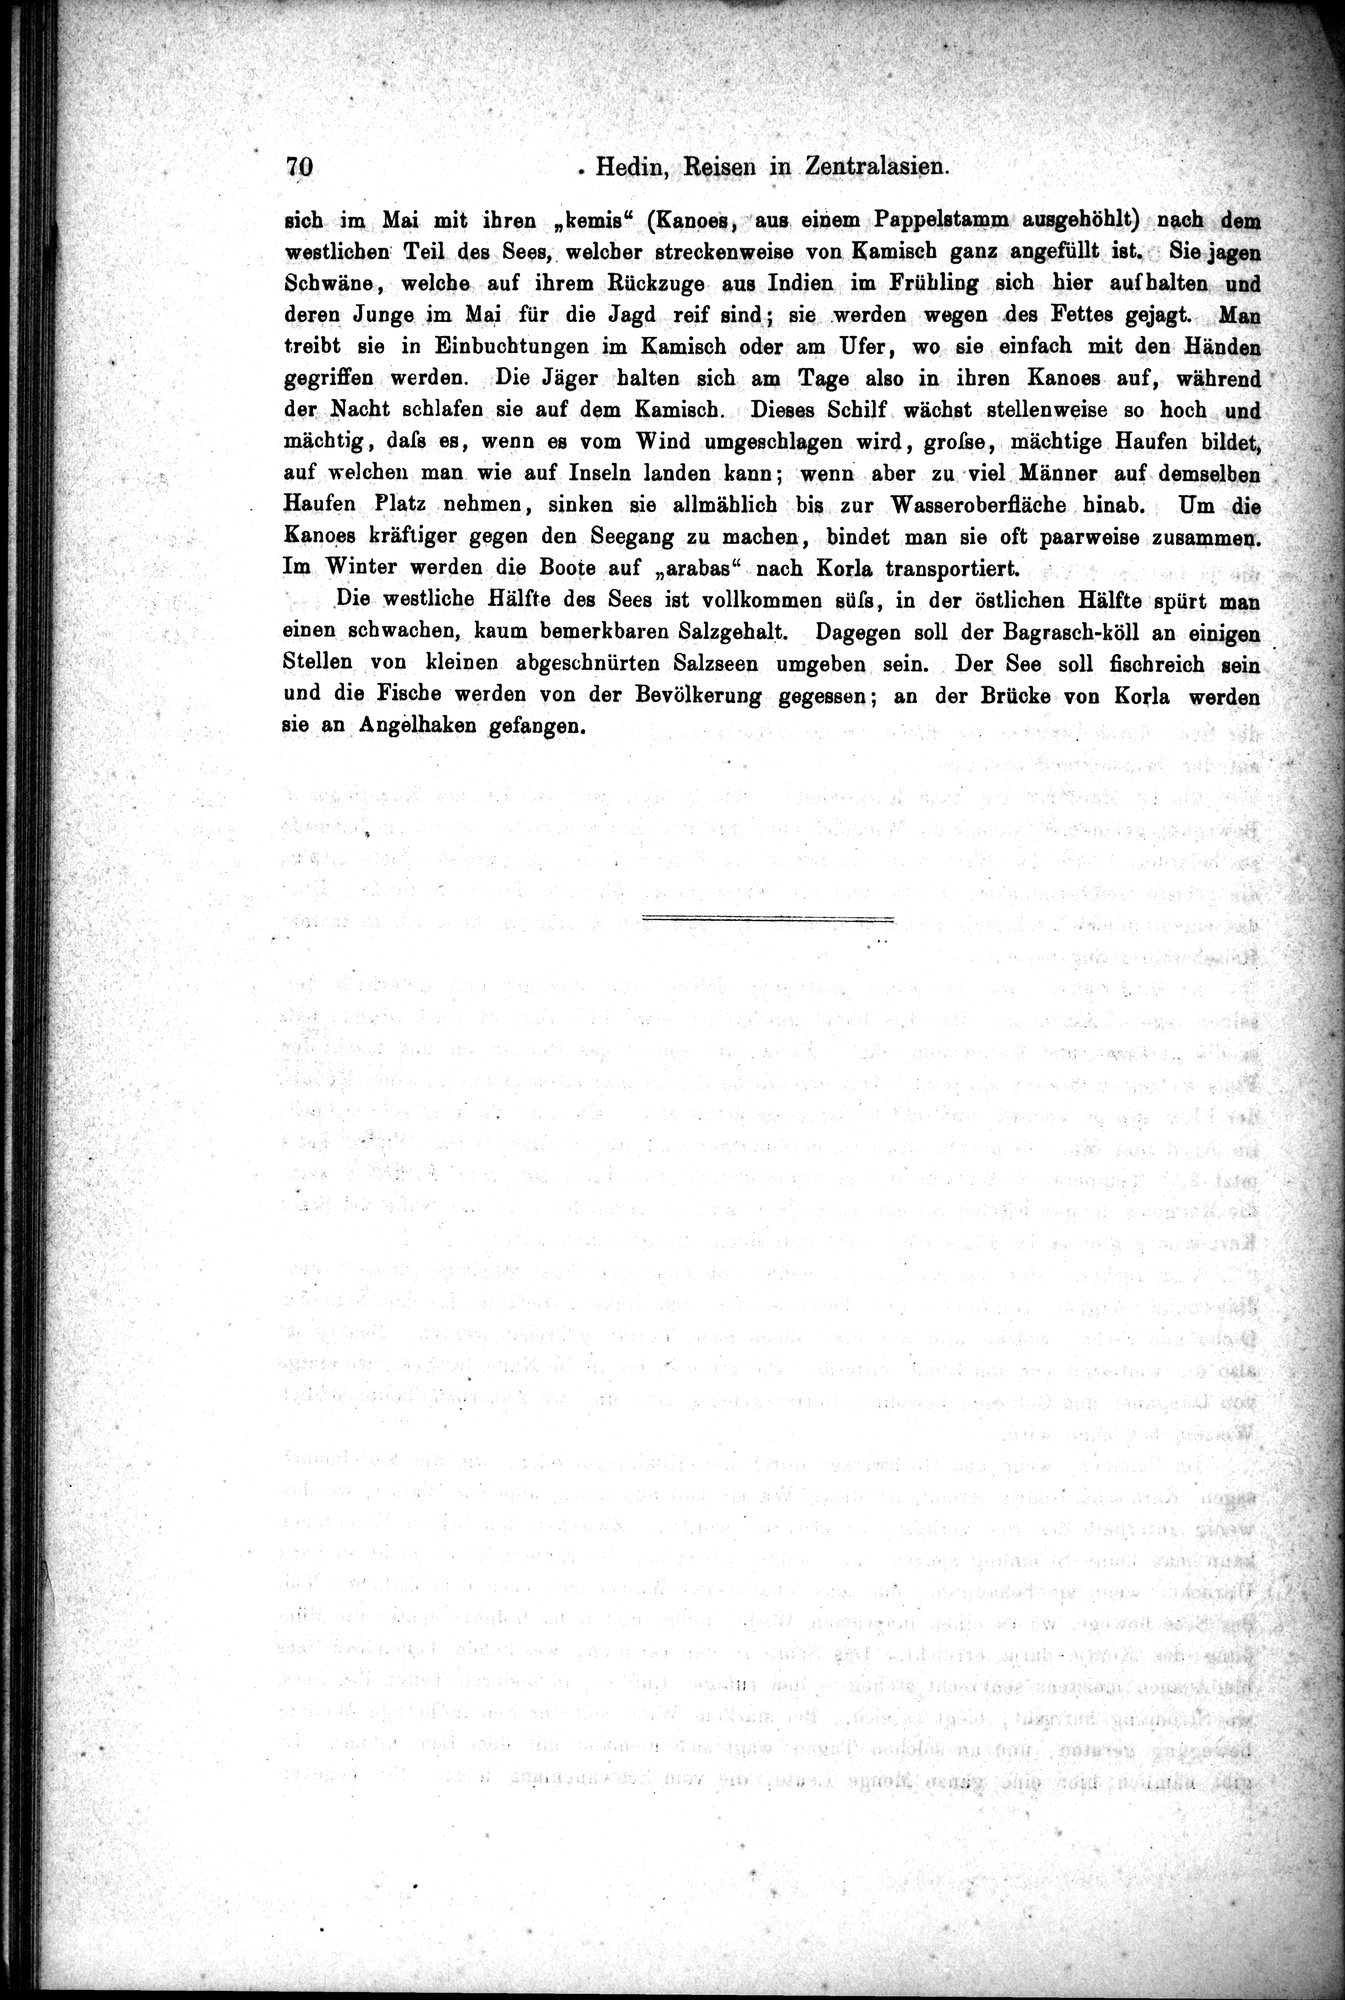 Die Geographische-Wissenschaftlichen Ergebnisse meiner Reisen in Zentralasien, 1894-1897 : vol.1 / Page 82 (Grayscale High Resolution Image)